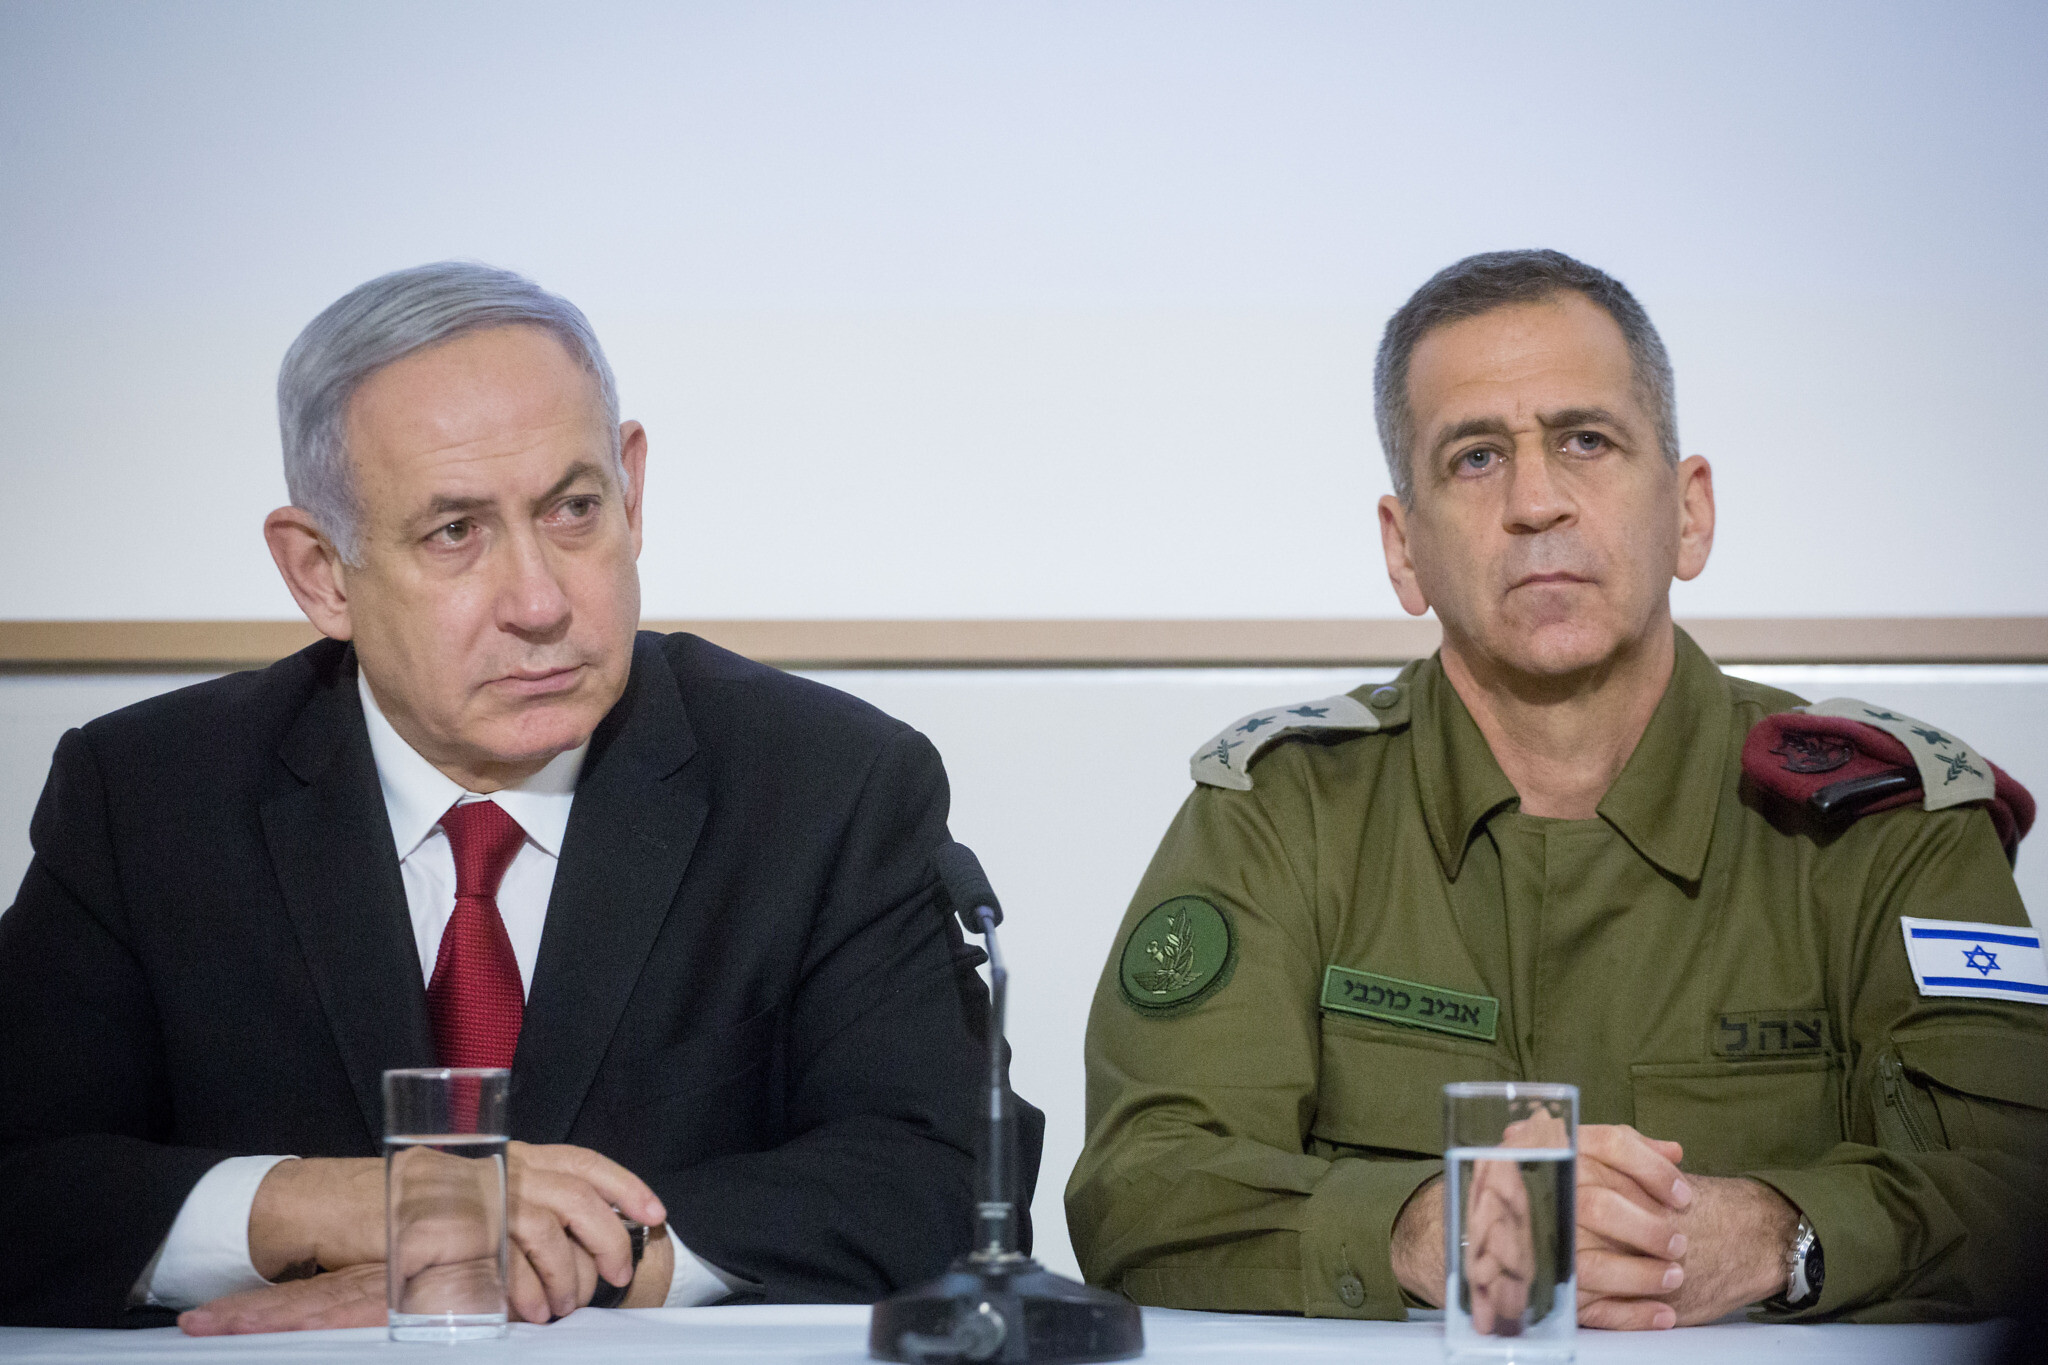 İsrail'de Gerilim: Kohavi ve Netanyahu Tartıştı